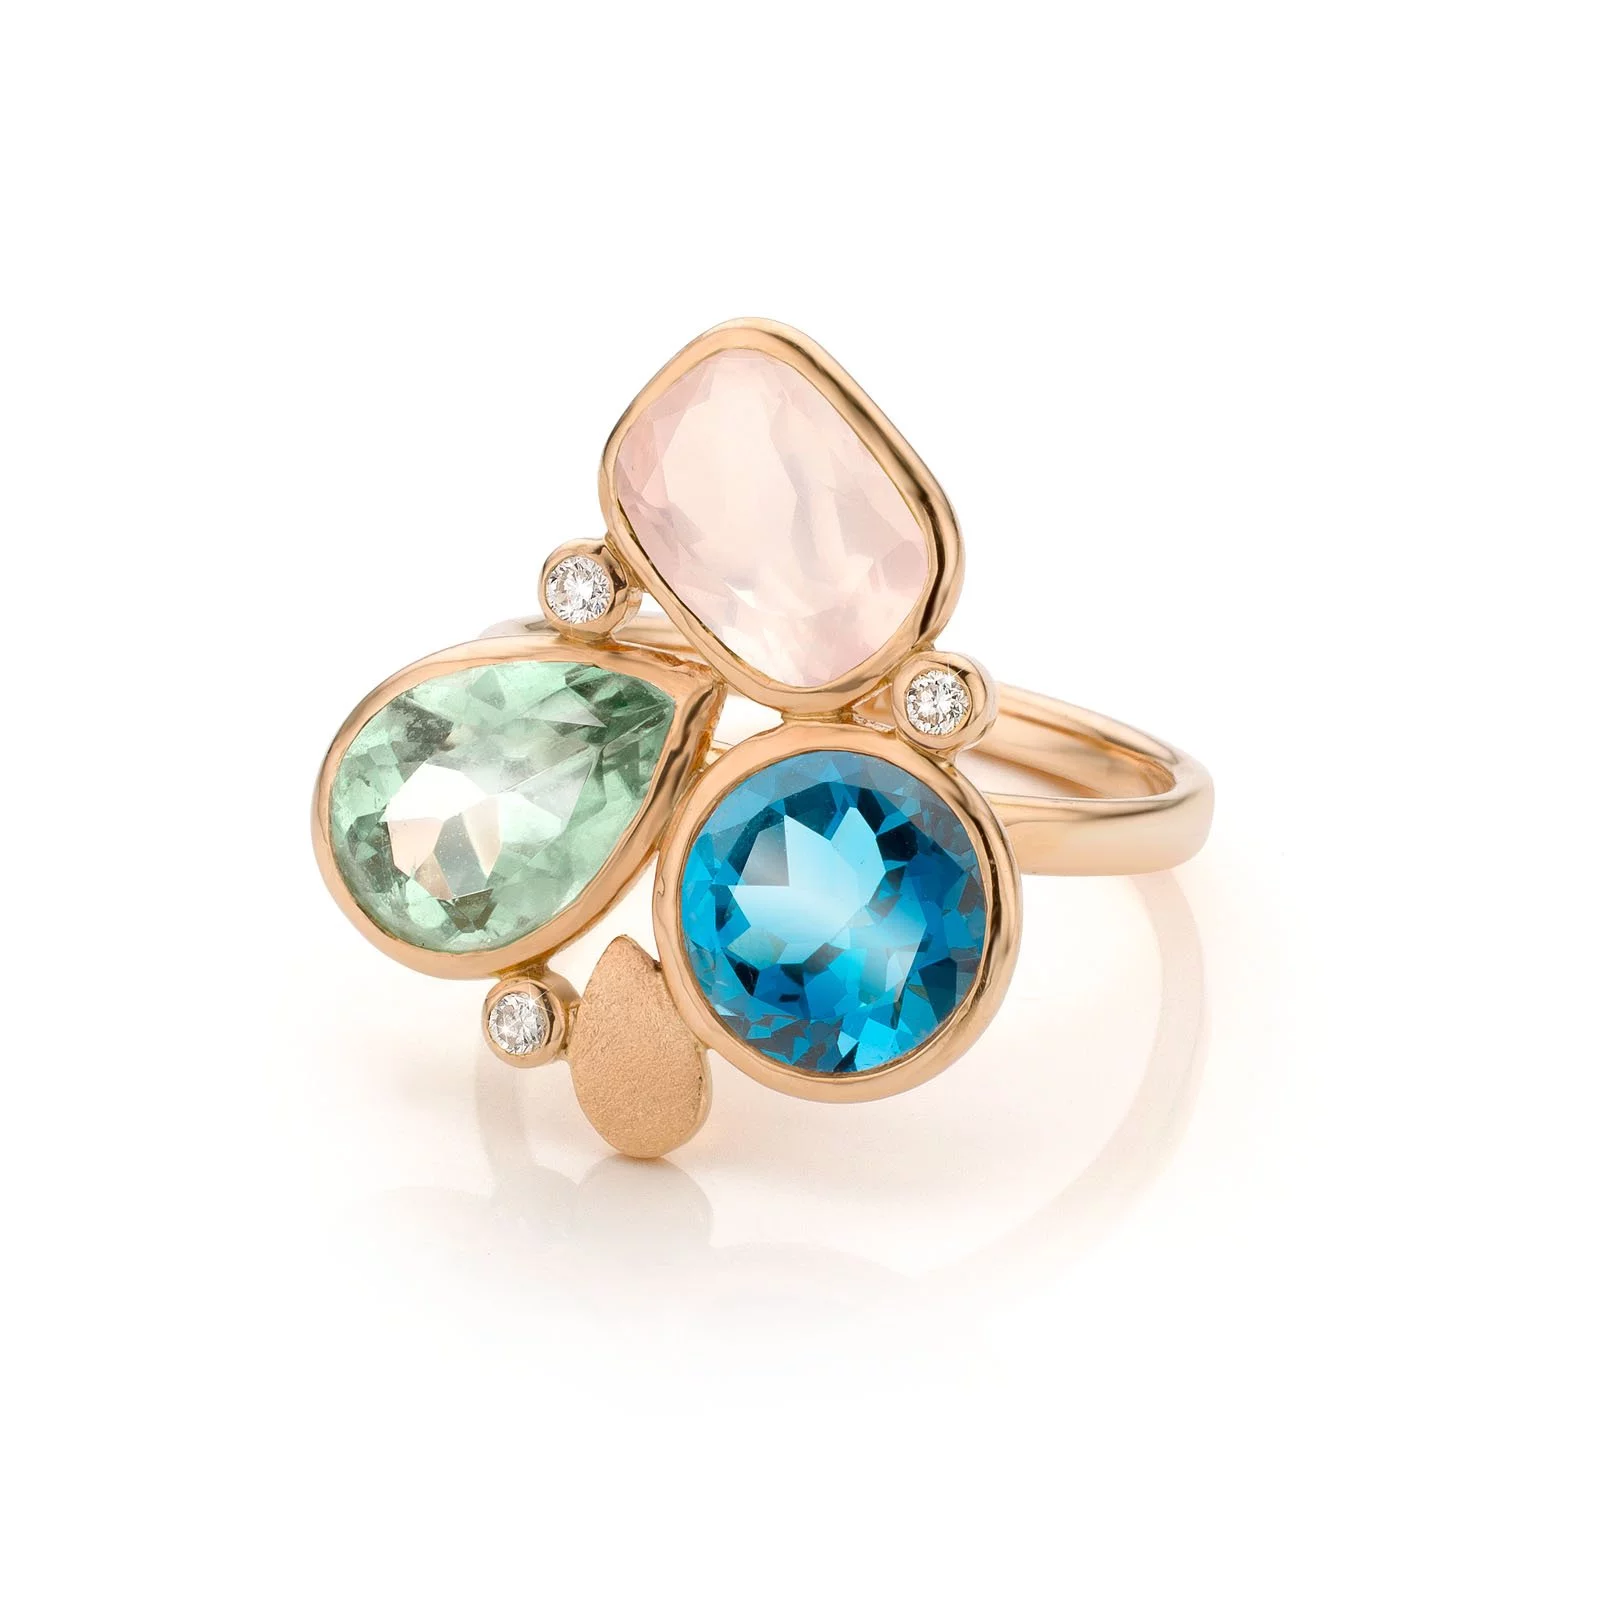 Audrey Huet Joaillerie : Ring N°3 gekleurde en natuurlijke stenen voor elegante vrouwen met karakter MADE in Belgium